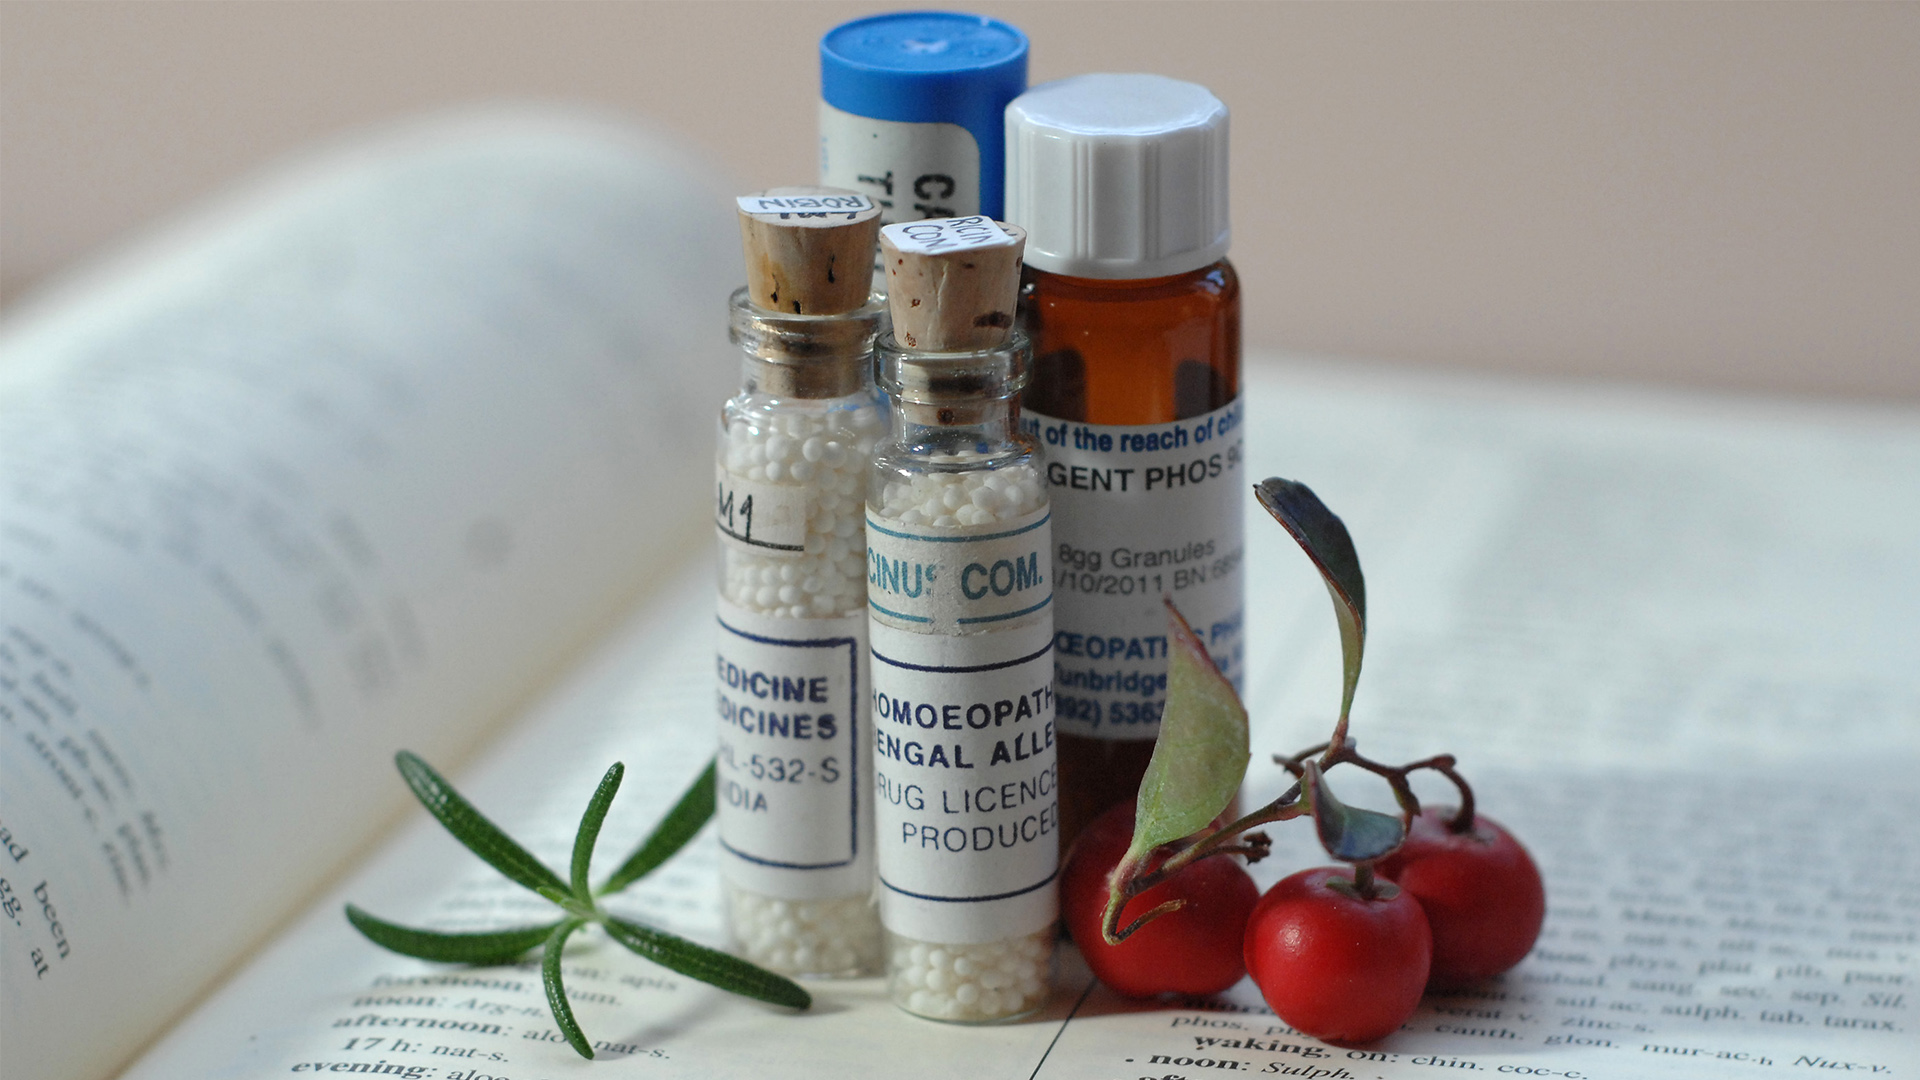 Australia plantea prohibir la venta de homeopatía en las farmacias